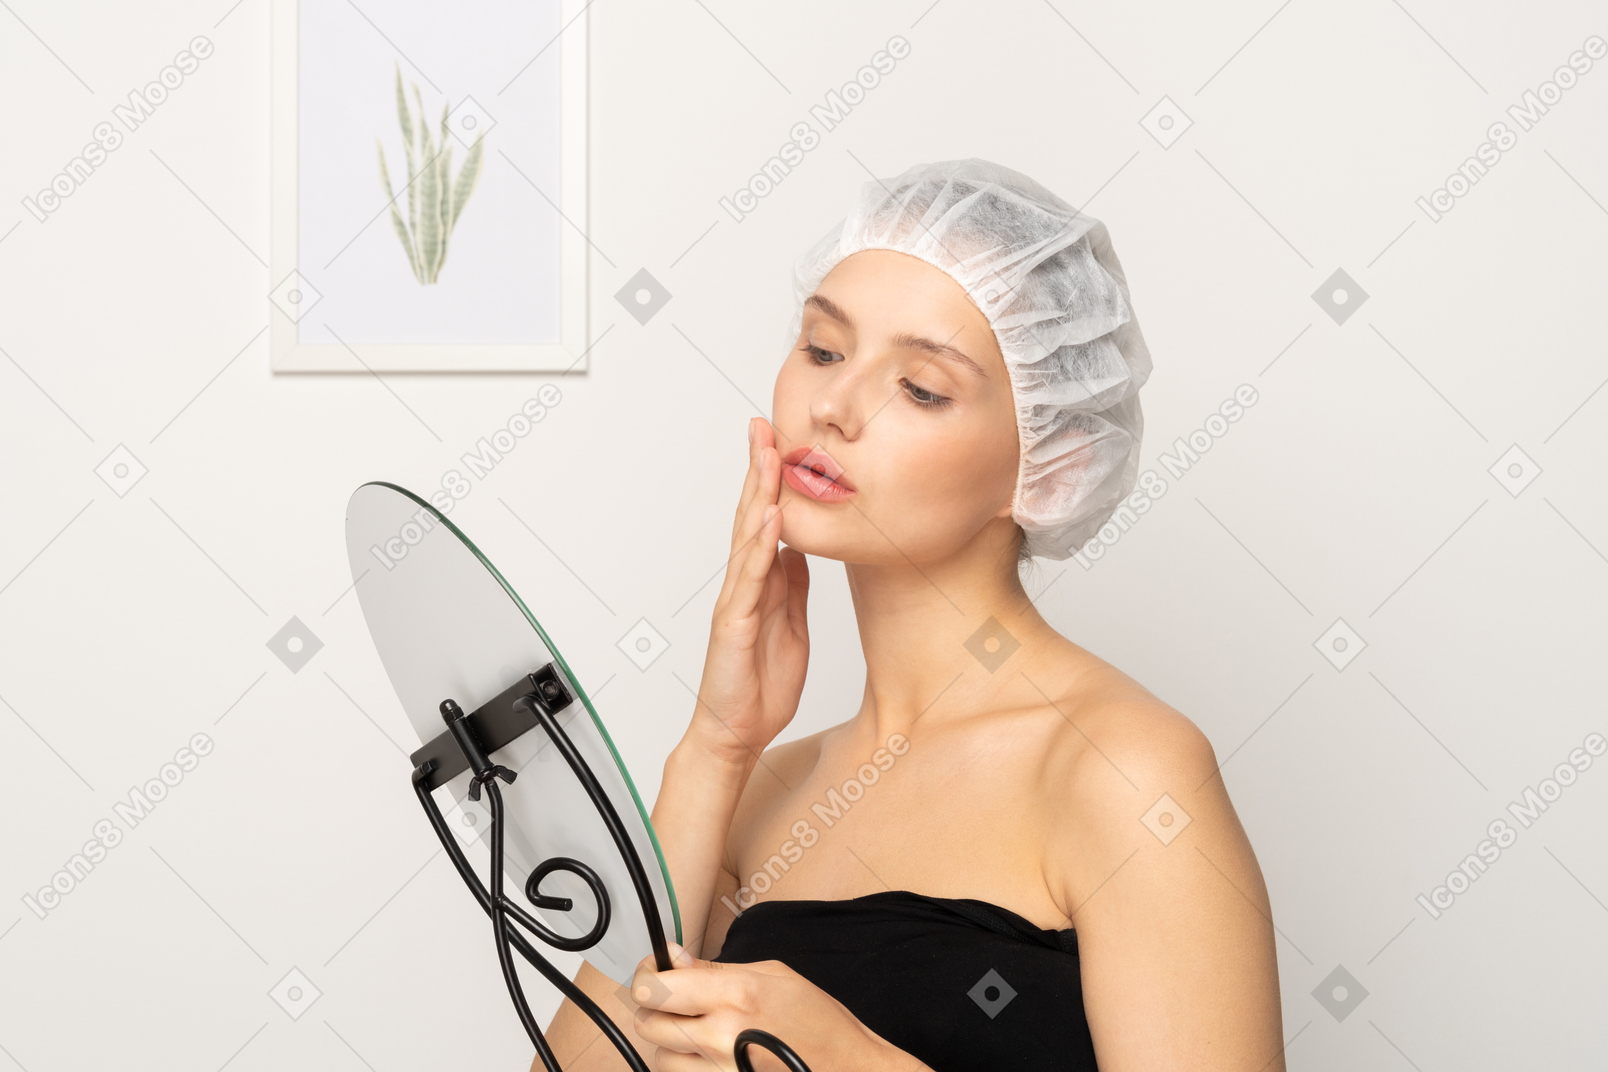 거울을 보면서 피부를 만지는 의료 모자를 쓴 젊은 여성 환자